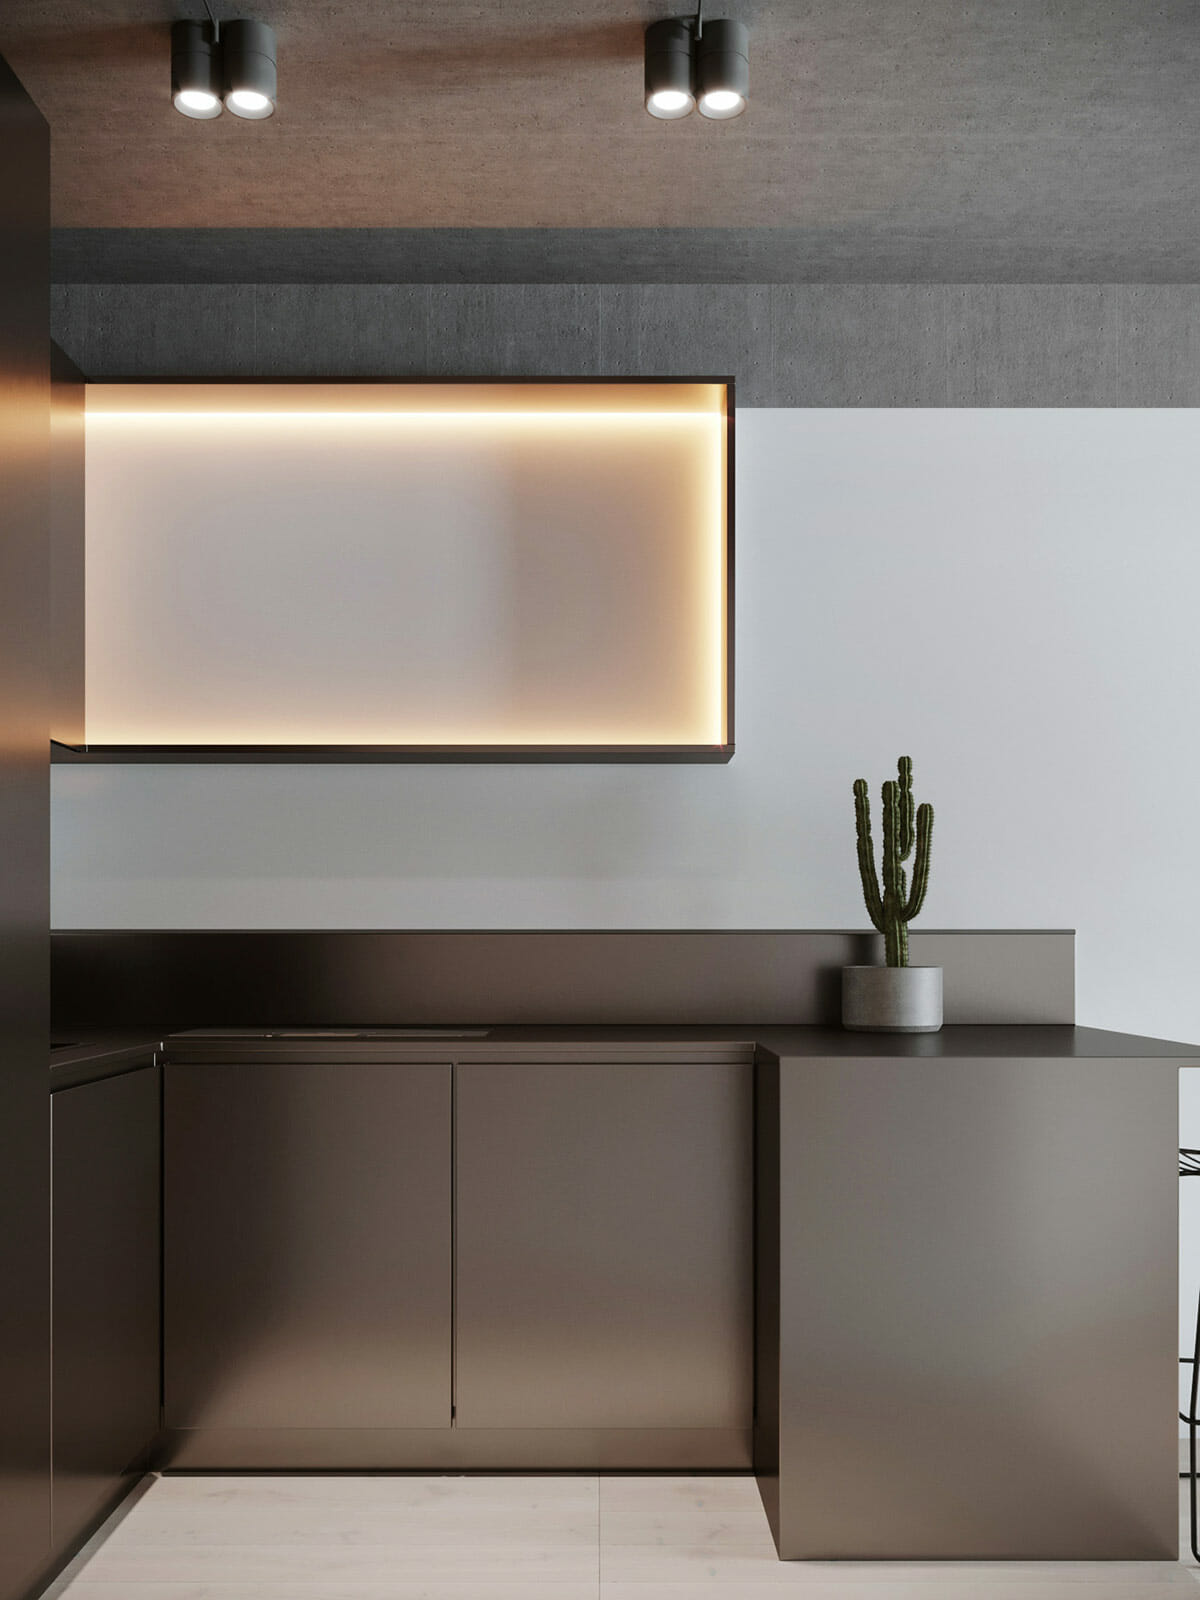 การออกแบบไฟ LED ตู้ครัว